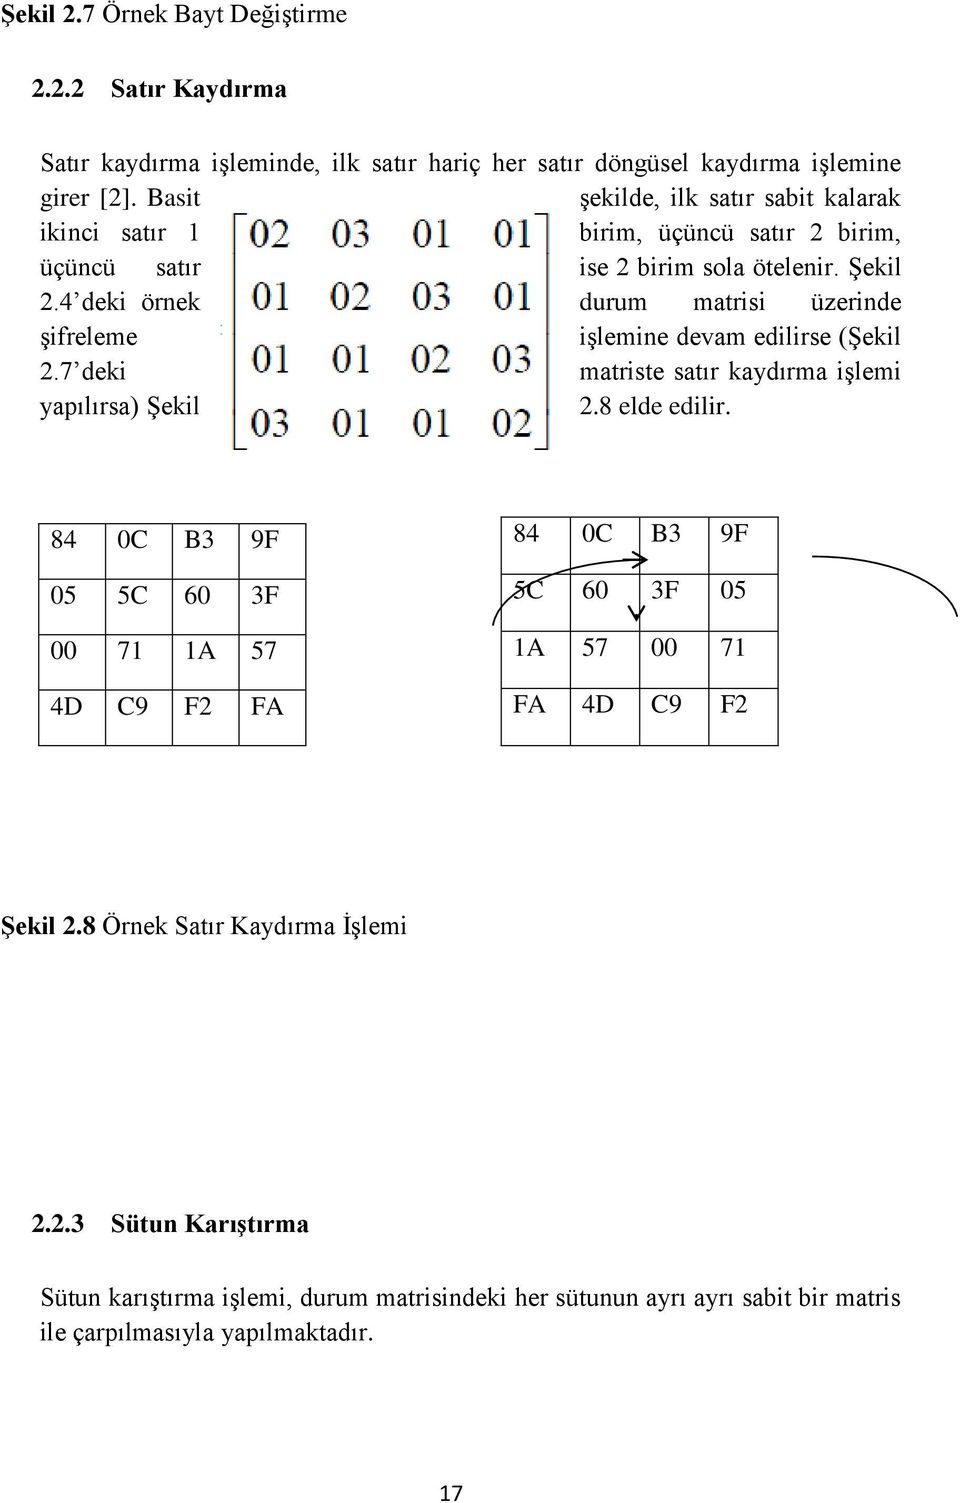 4 deki örnek durum matrisi üzerinde şifreleme işlemine devam edilirse (Şekil 2.7 deki matriste satır kaydırma işlemi yapılırsa) Şekil 2.8 elde edilir.